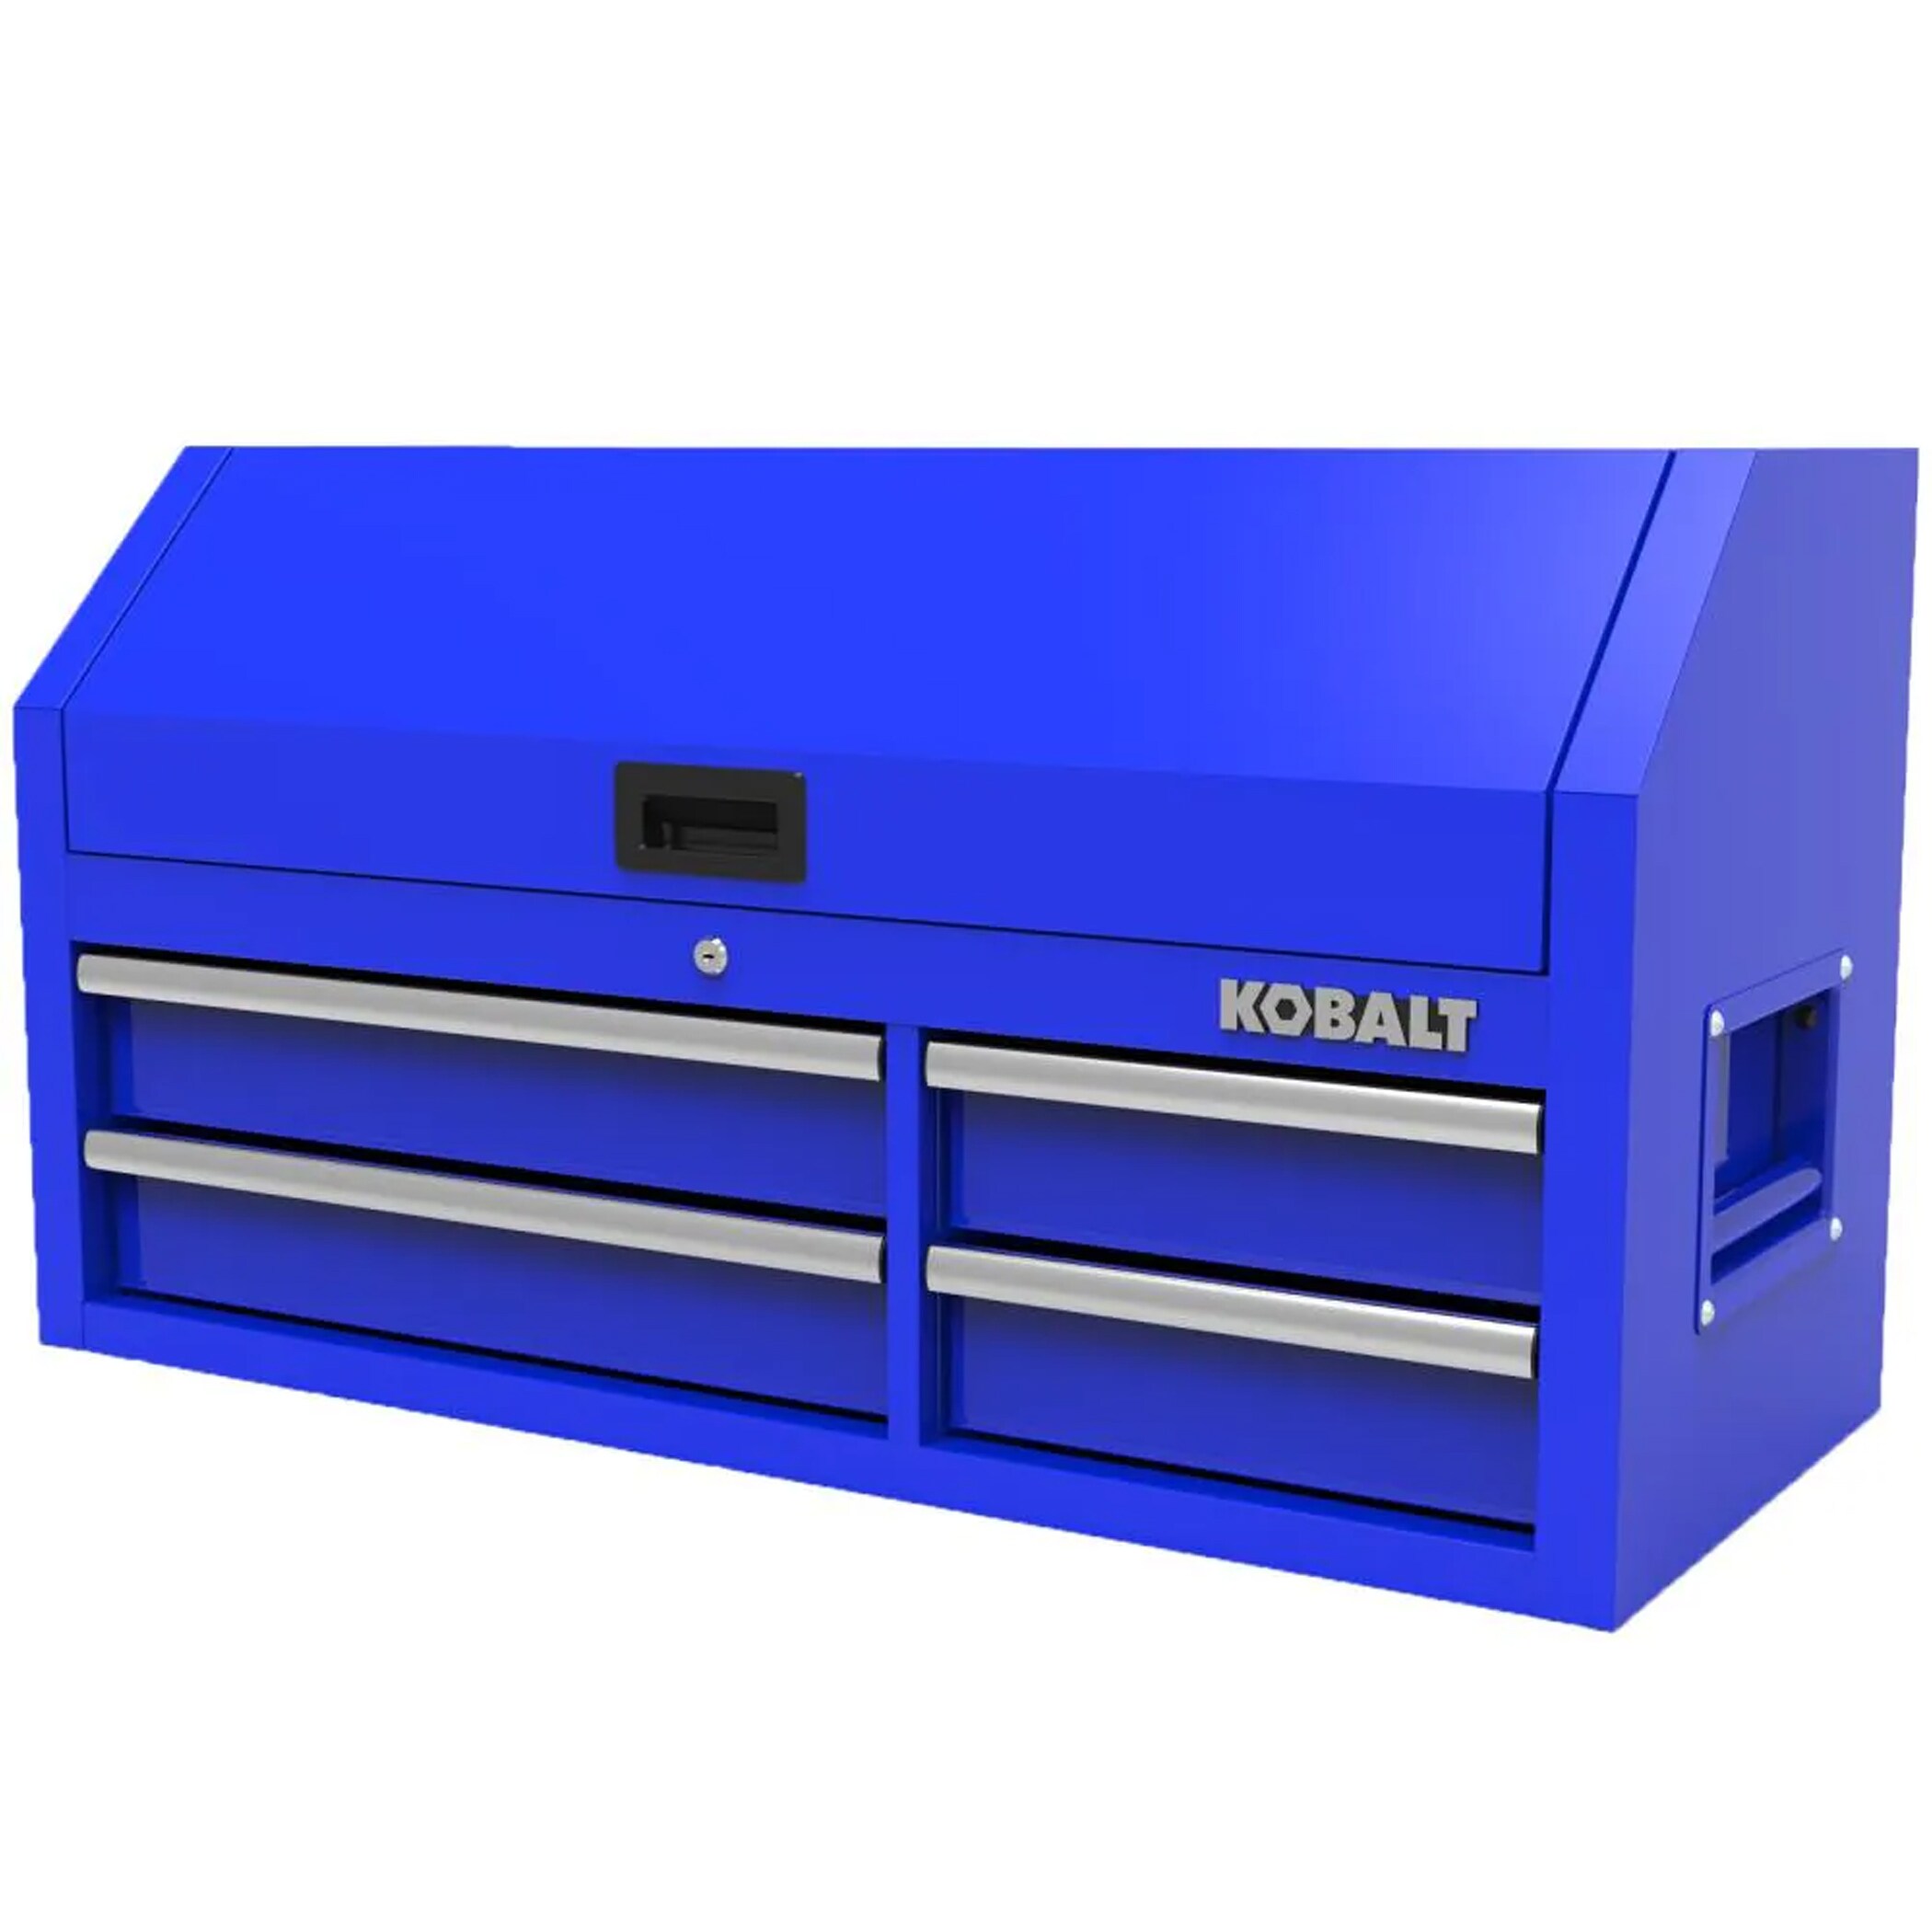 Kobalt Mini Toolbox, Industrial